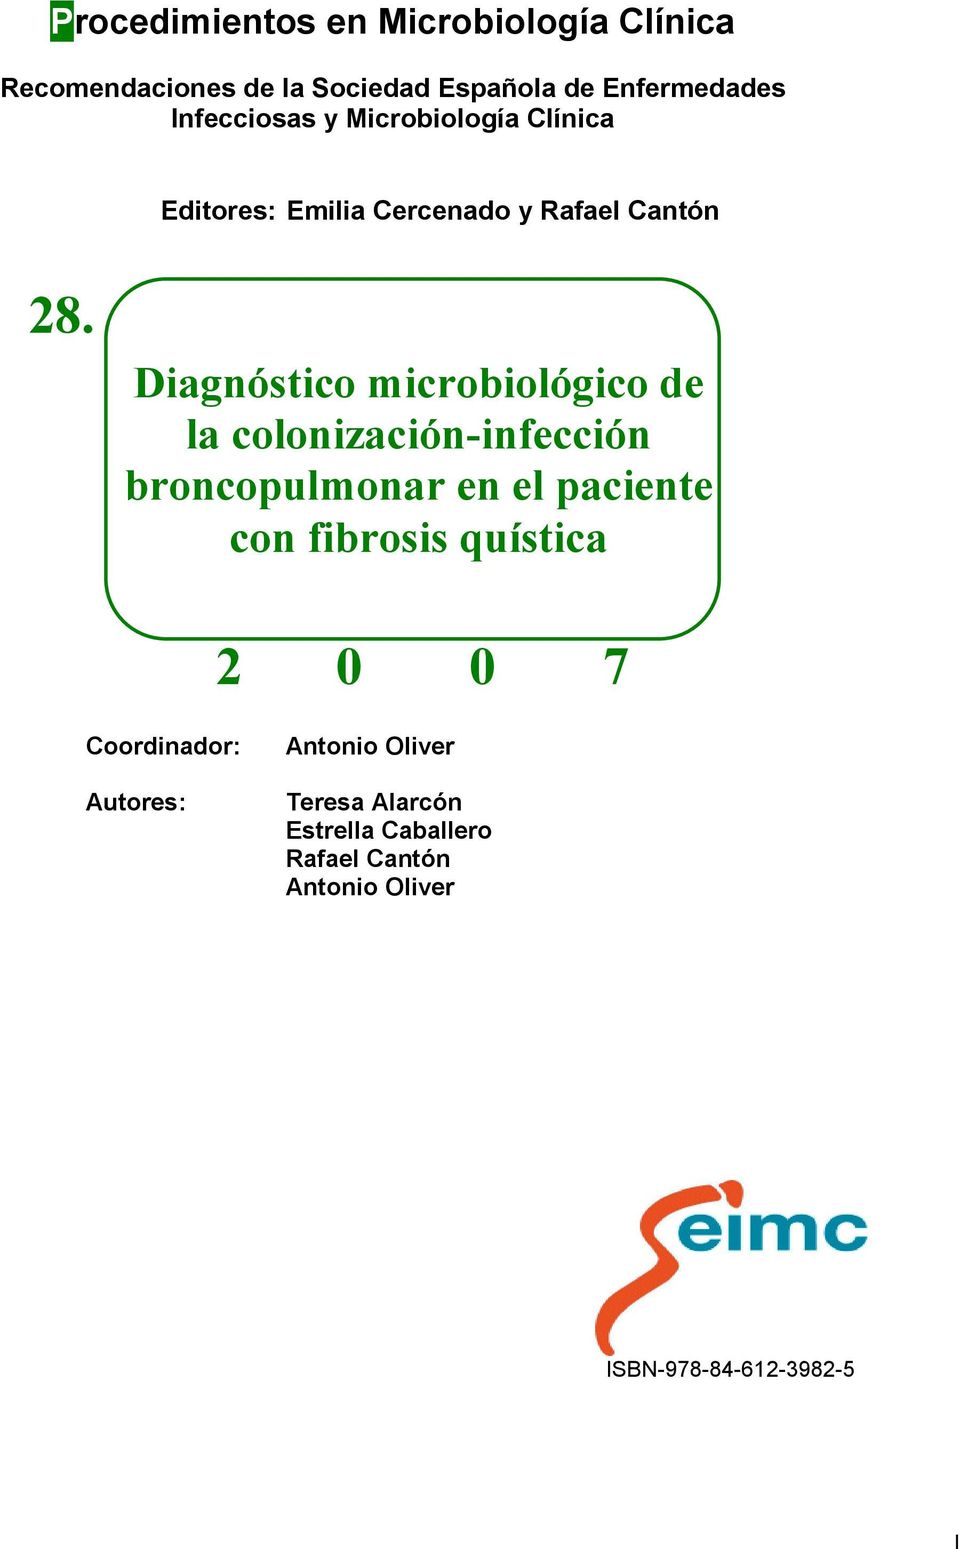 Diagnóstico microbiológico de la colonización-infección broncopulmonar en el paciente con fibrosis